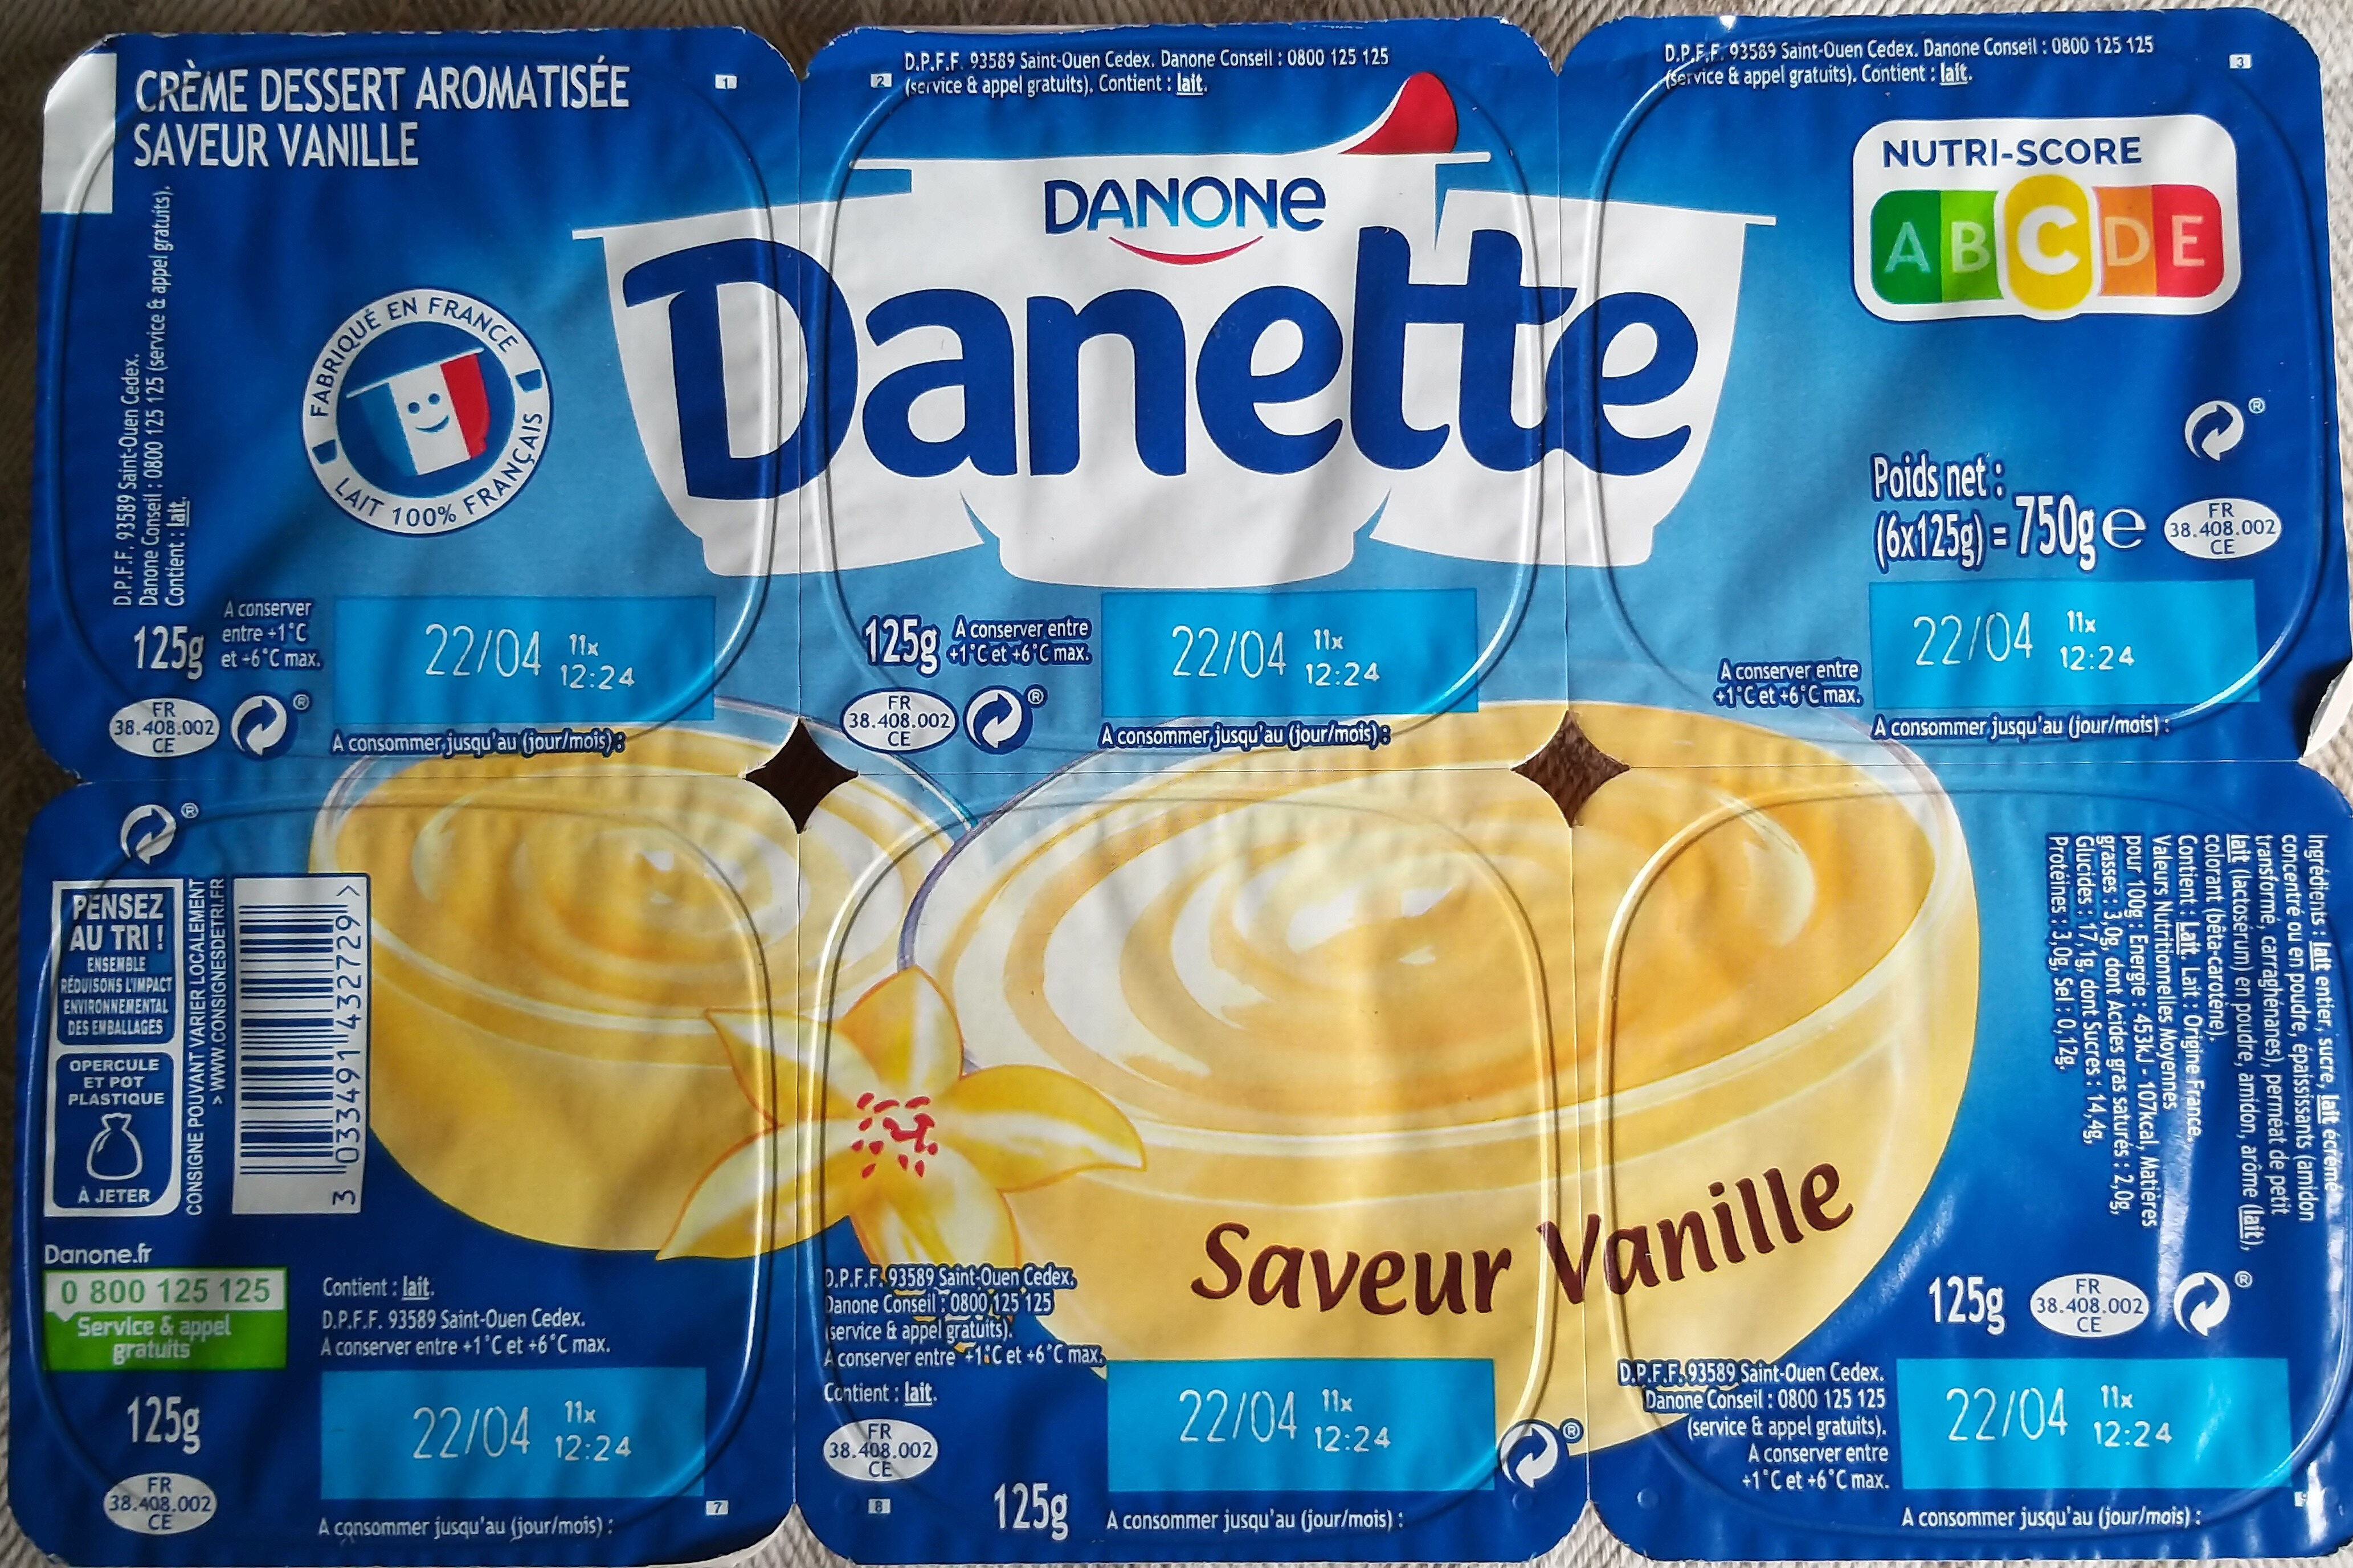 Danette saveur vanille - Produkt - fr